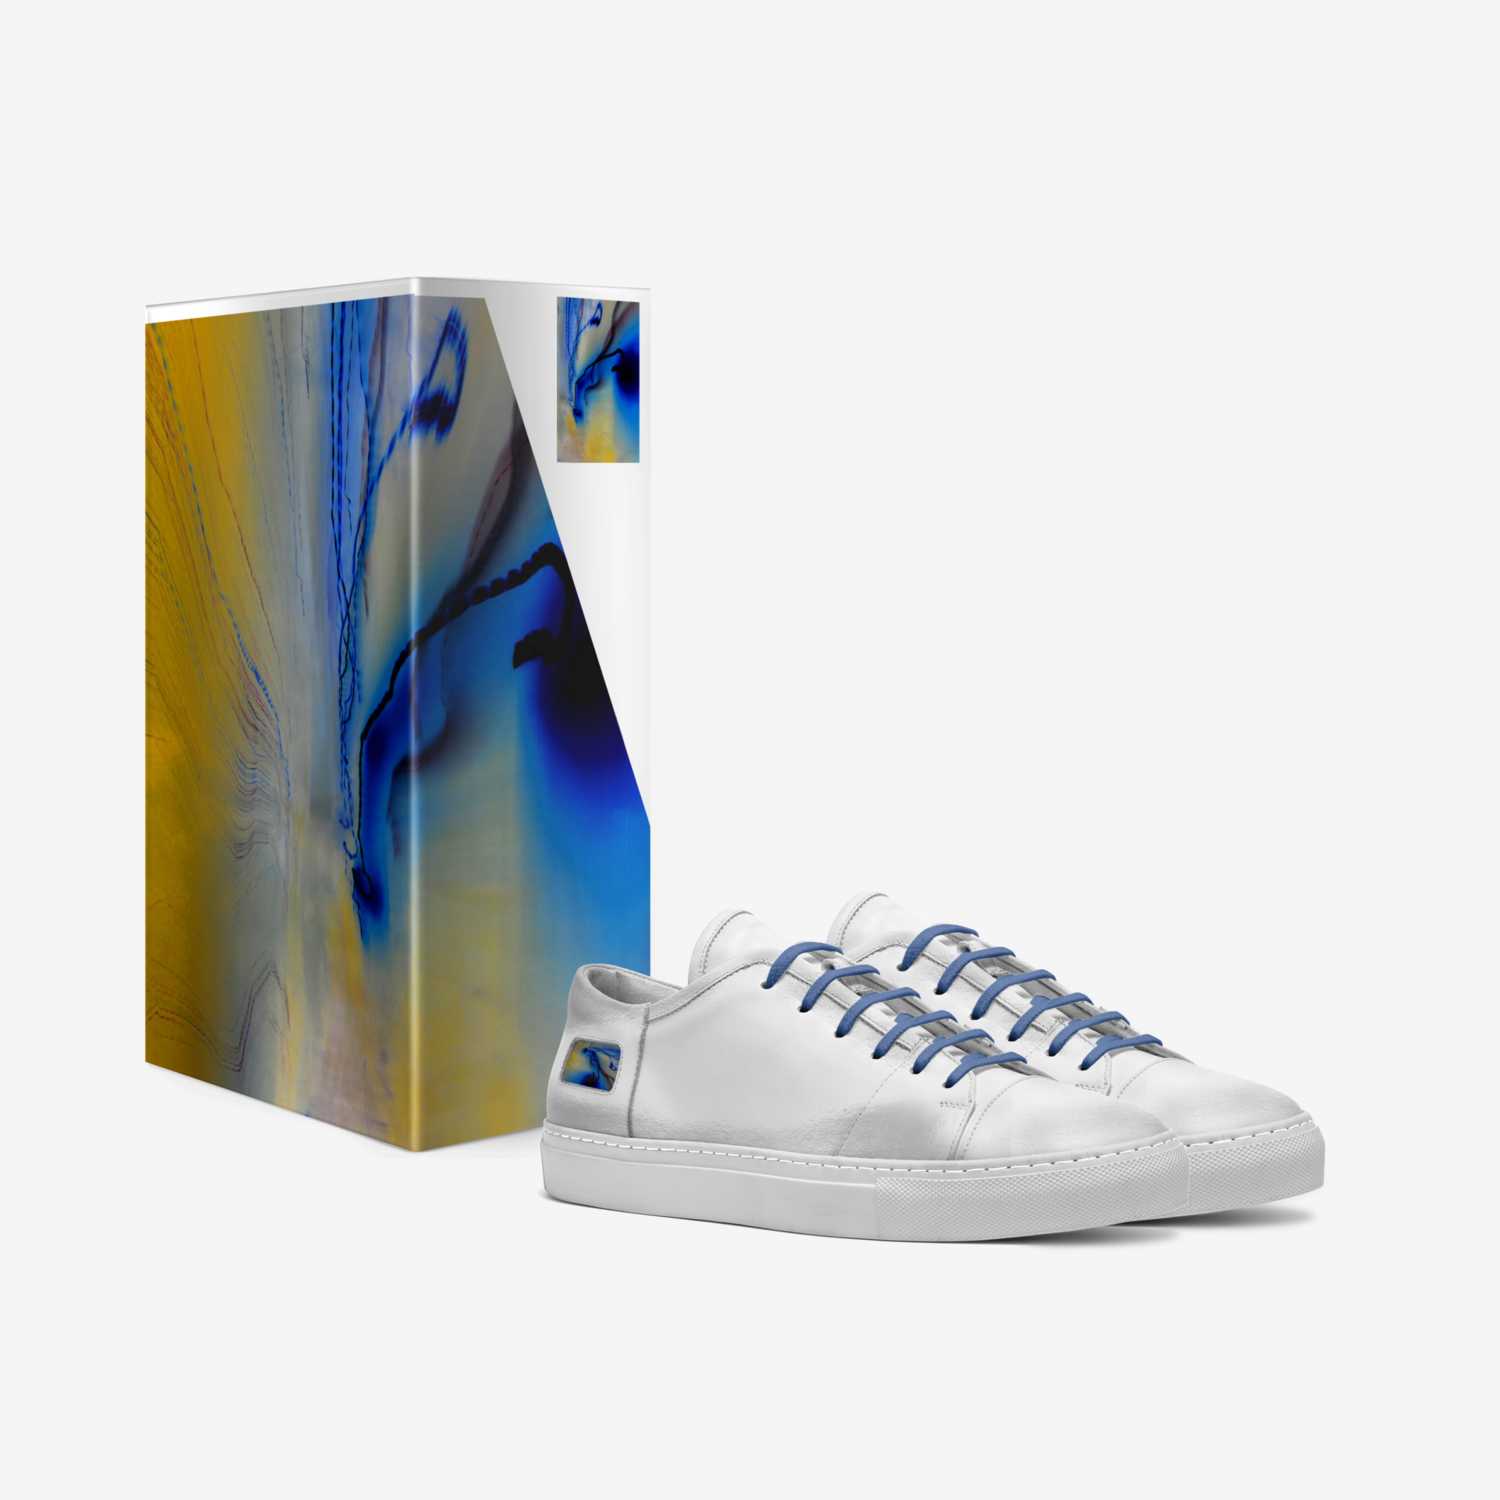 Dan custom made in Italy shoes by Dan Hurwitz | Box view